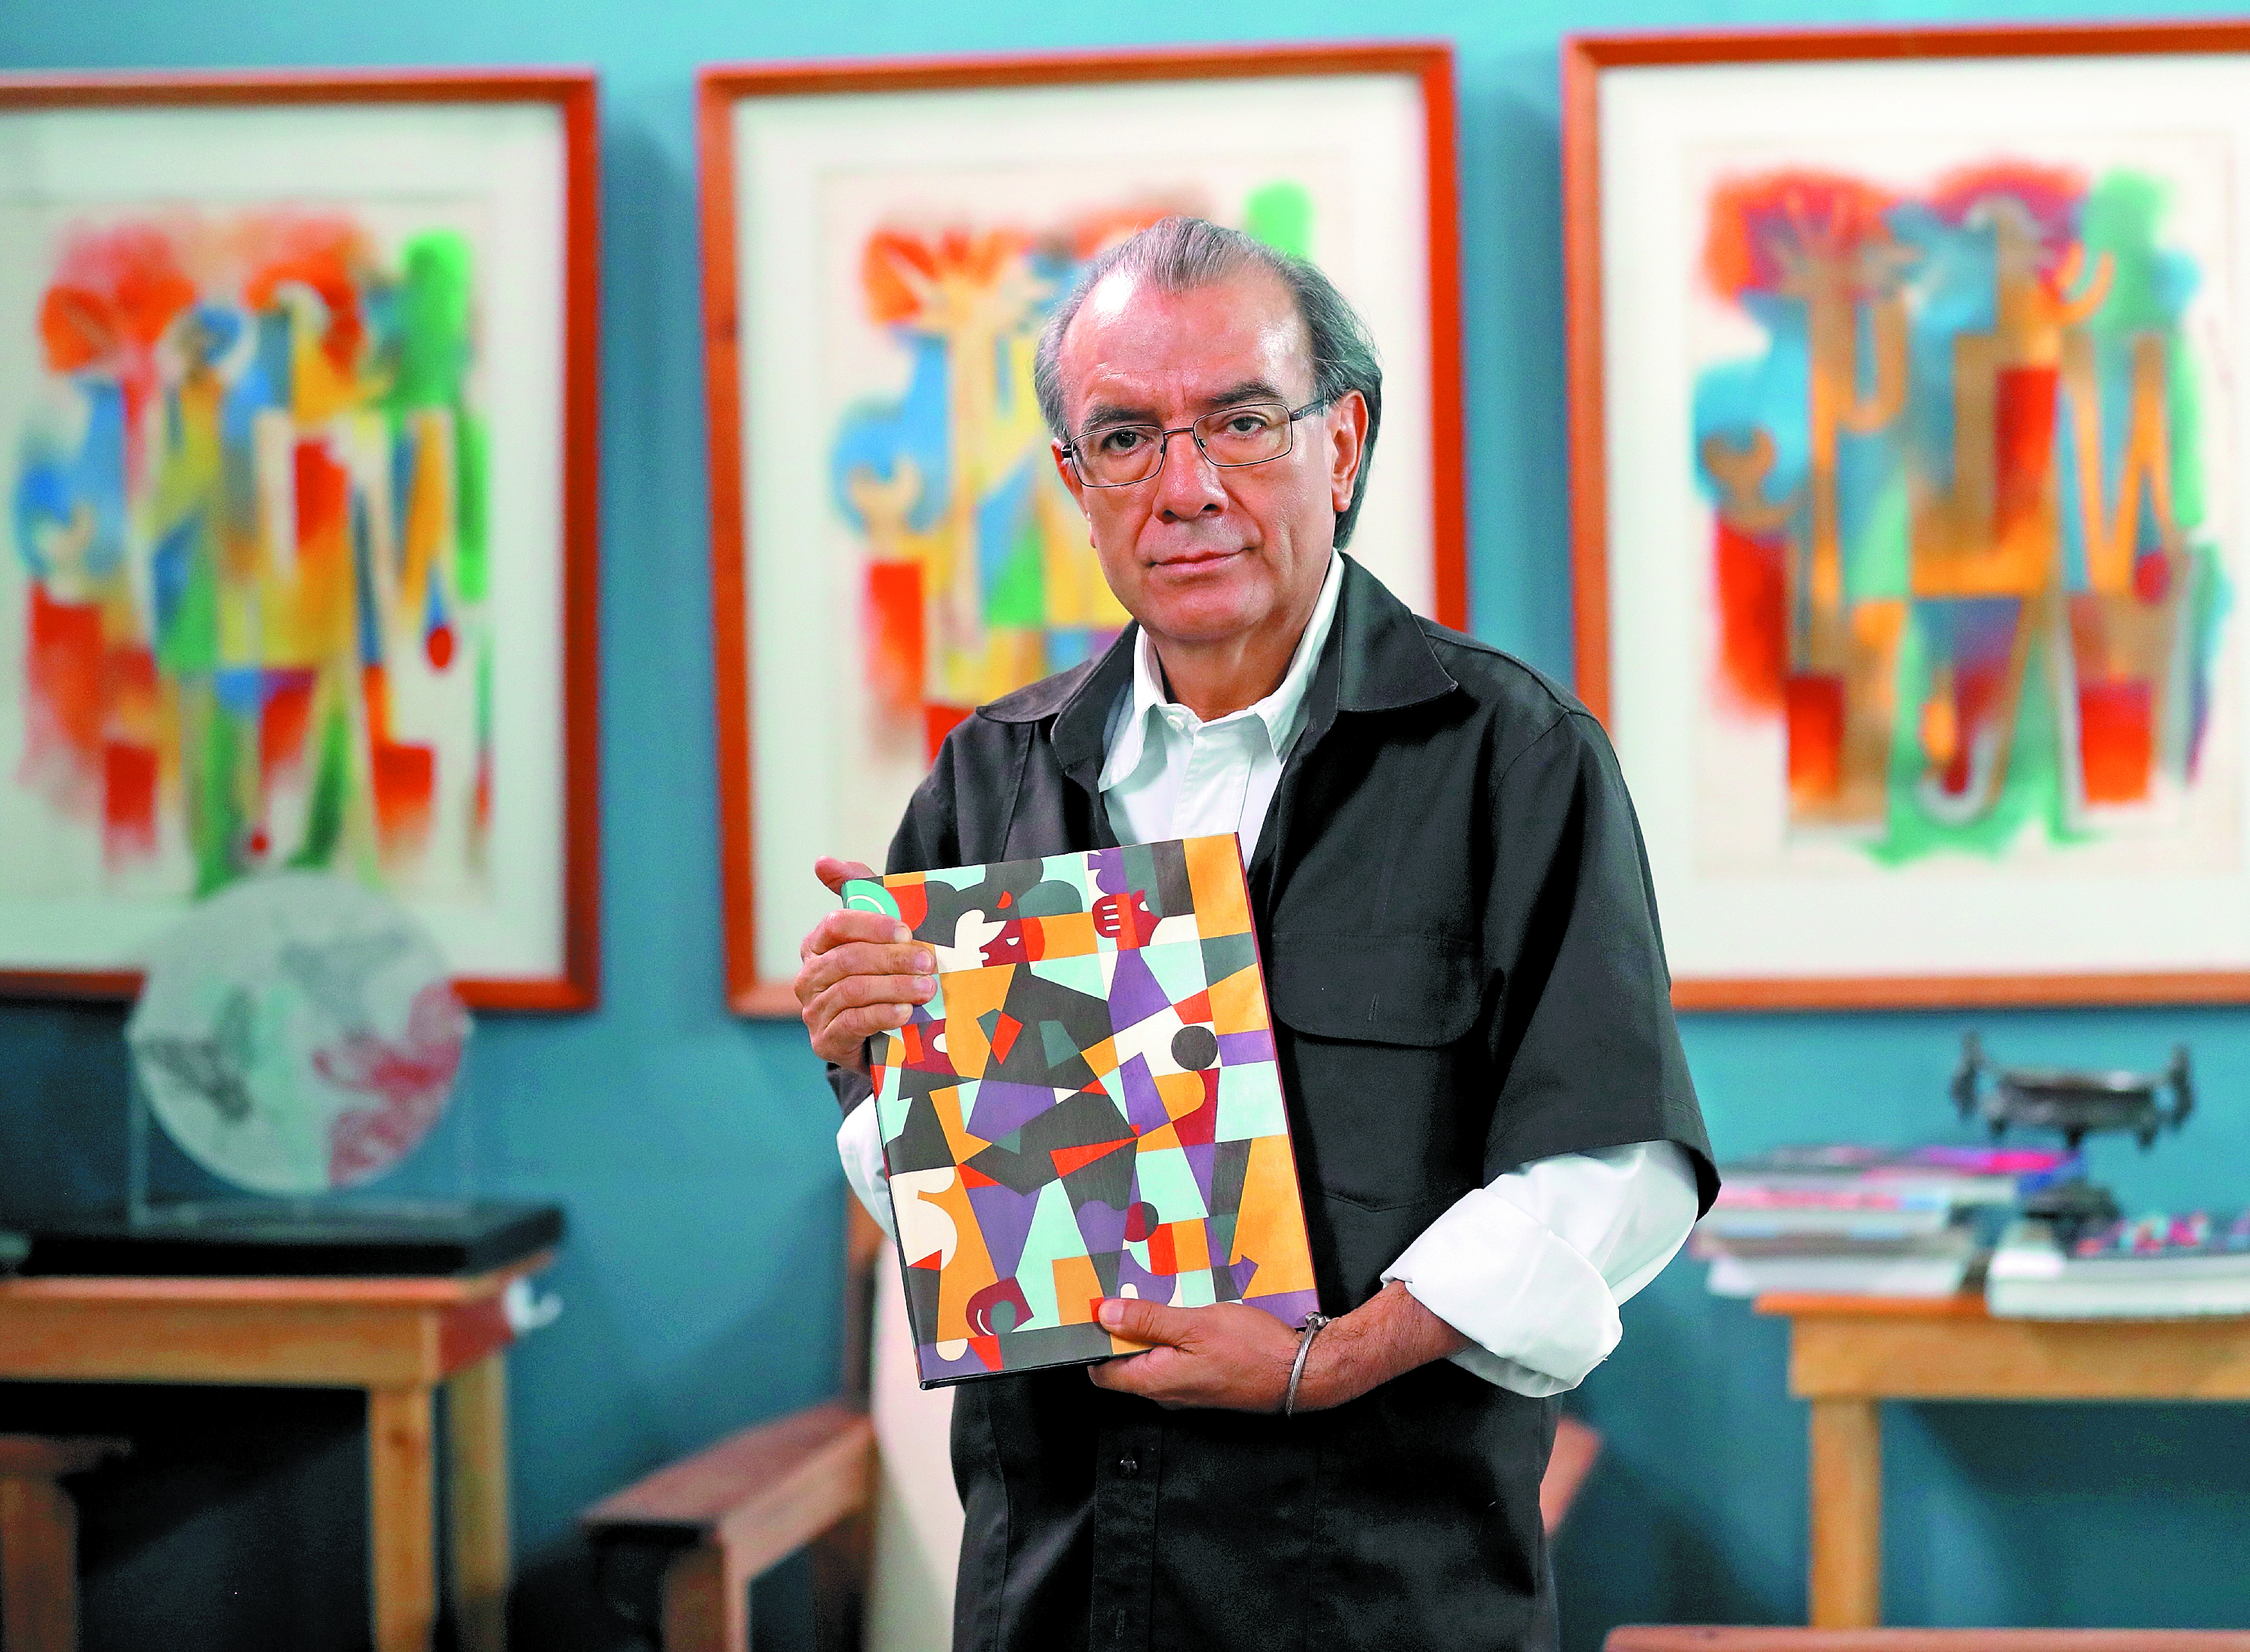 Las obras del artista Rudy Cotton se caracterizan por las figuras geométricas y su colorido. (Foto Prensa Libre: Hemeroteca PL). 